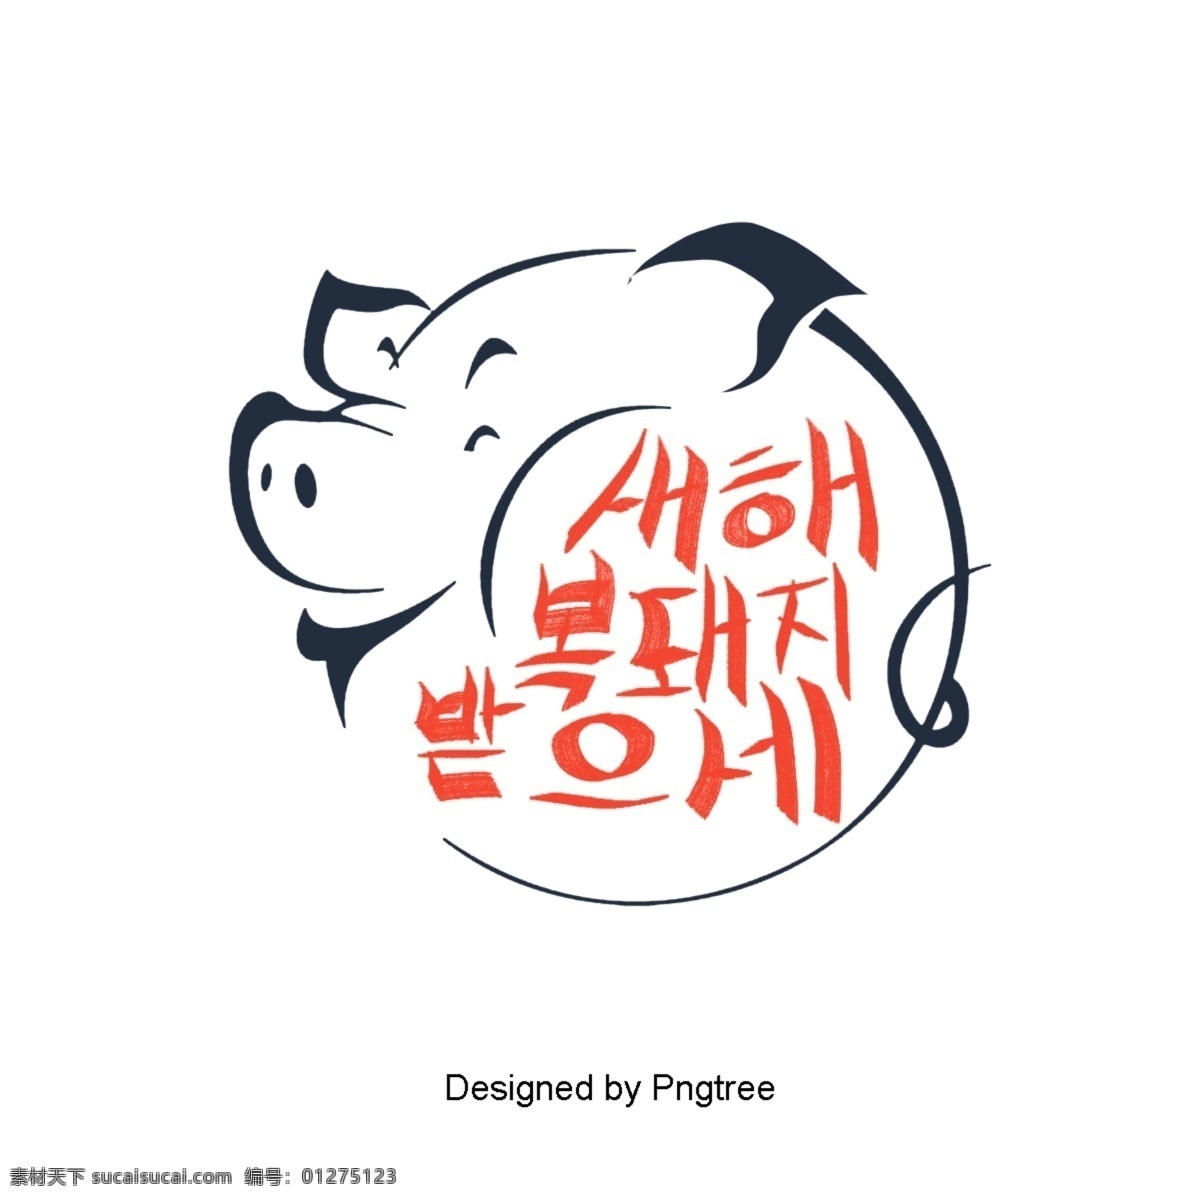 韩国 纸 手工 现场 可爱 的卡 通 简单 猪 祝你新年快乐 卡通 字体 移动支付